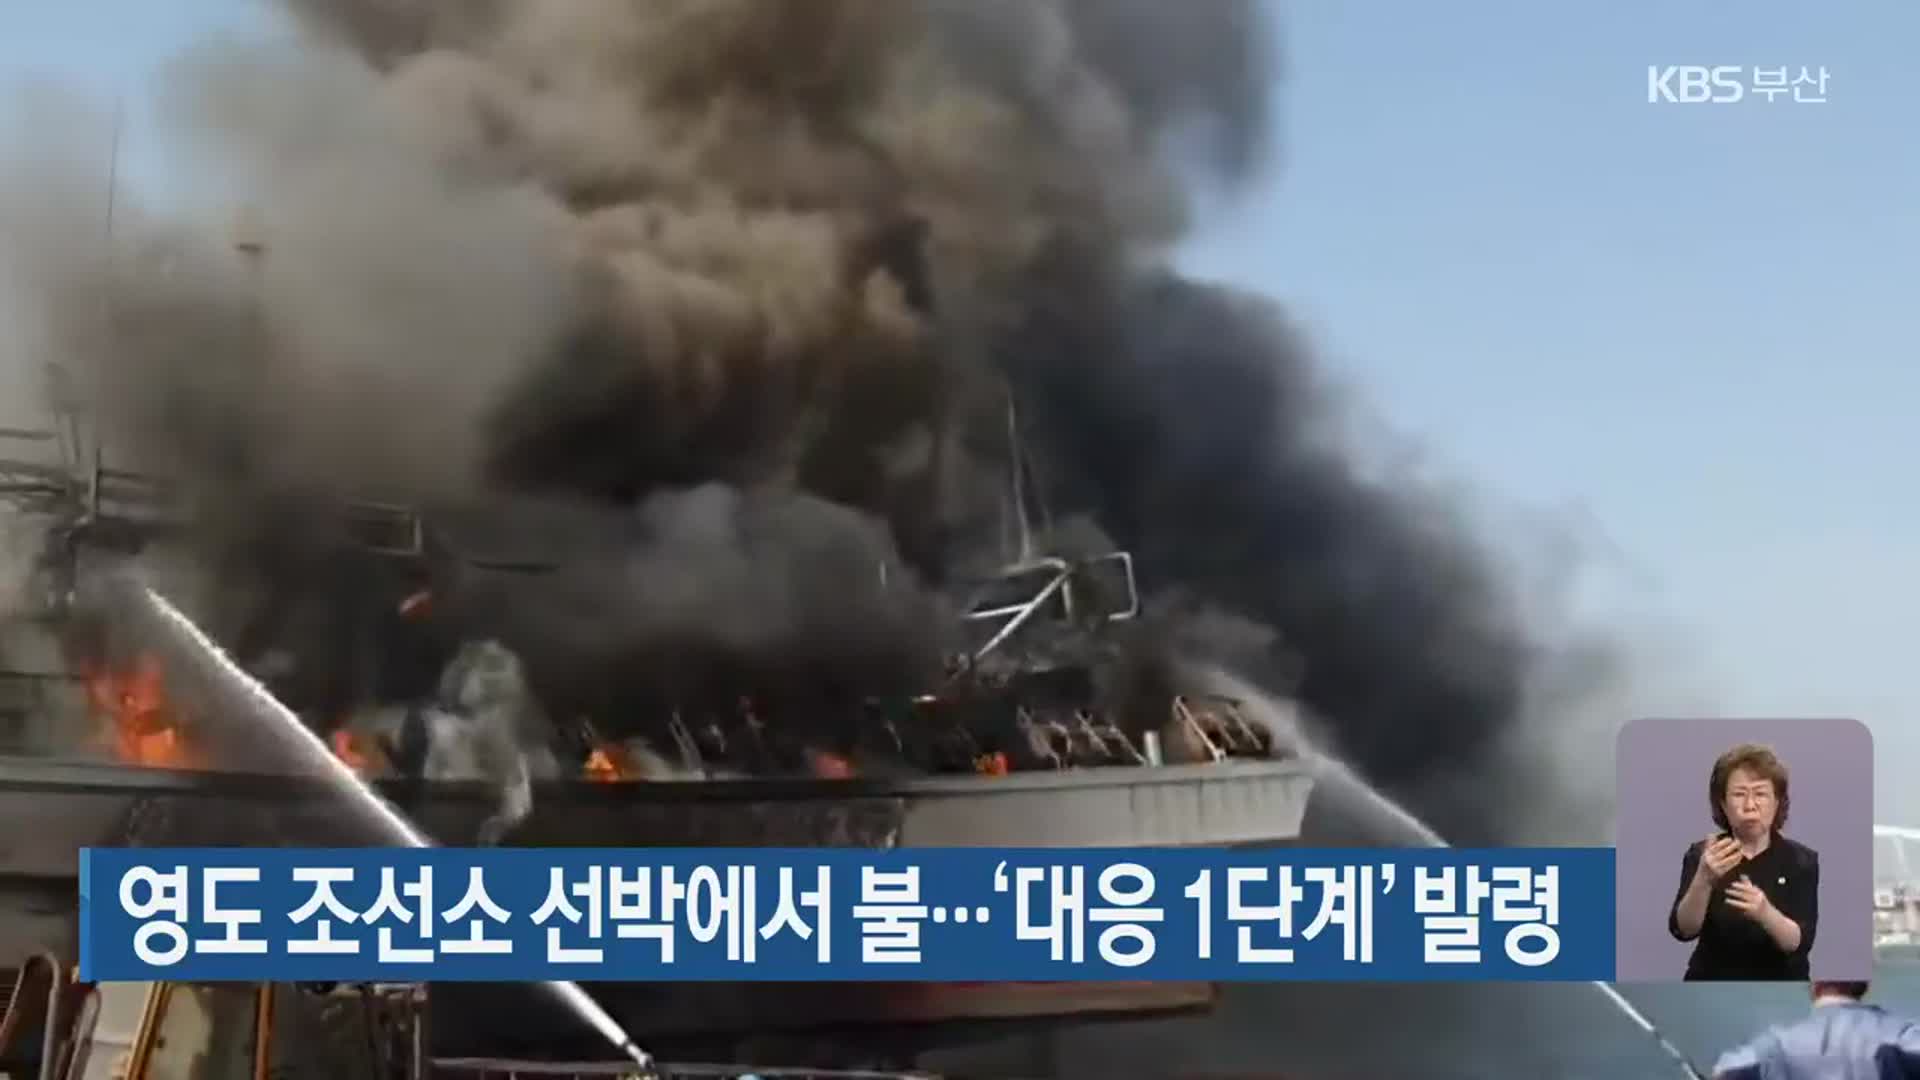 영도 조선소 선박에서 불…‘대응 1단계’ 발령